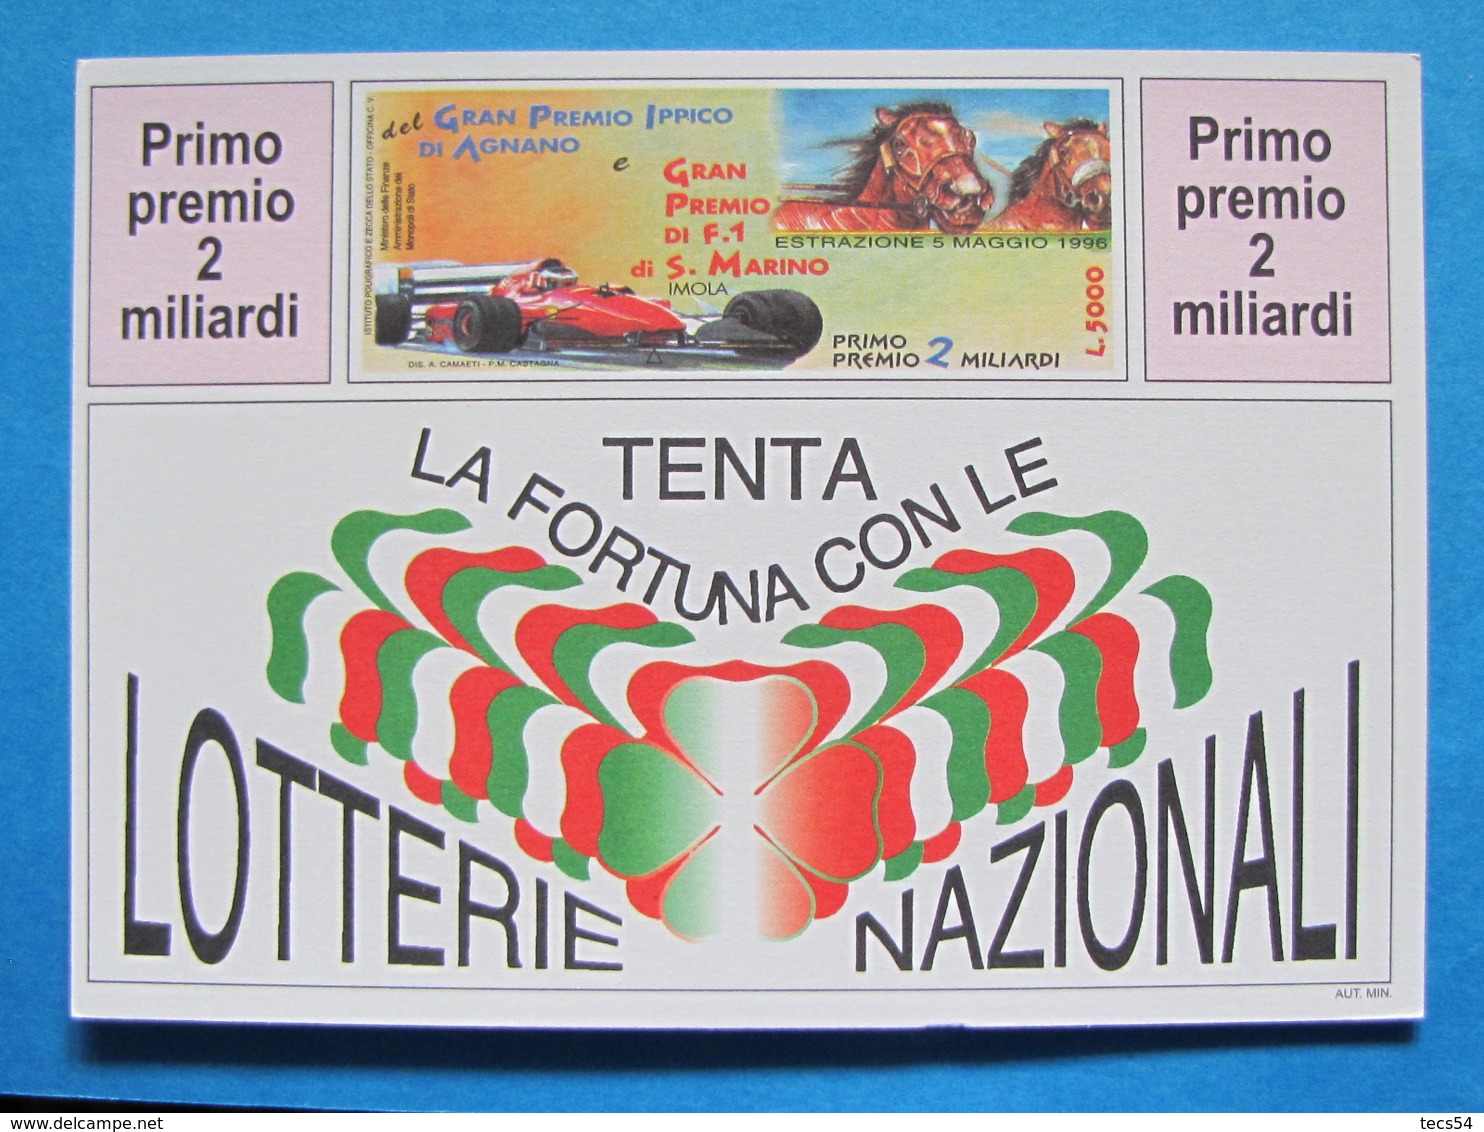 CARTOLINA LOTTERIA NAZIONALE AGNANO E GRAN PREMIO F1 SAN MARINO IMOLA 1996 - Biglietti Della Lotteria